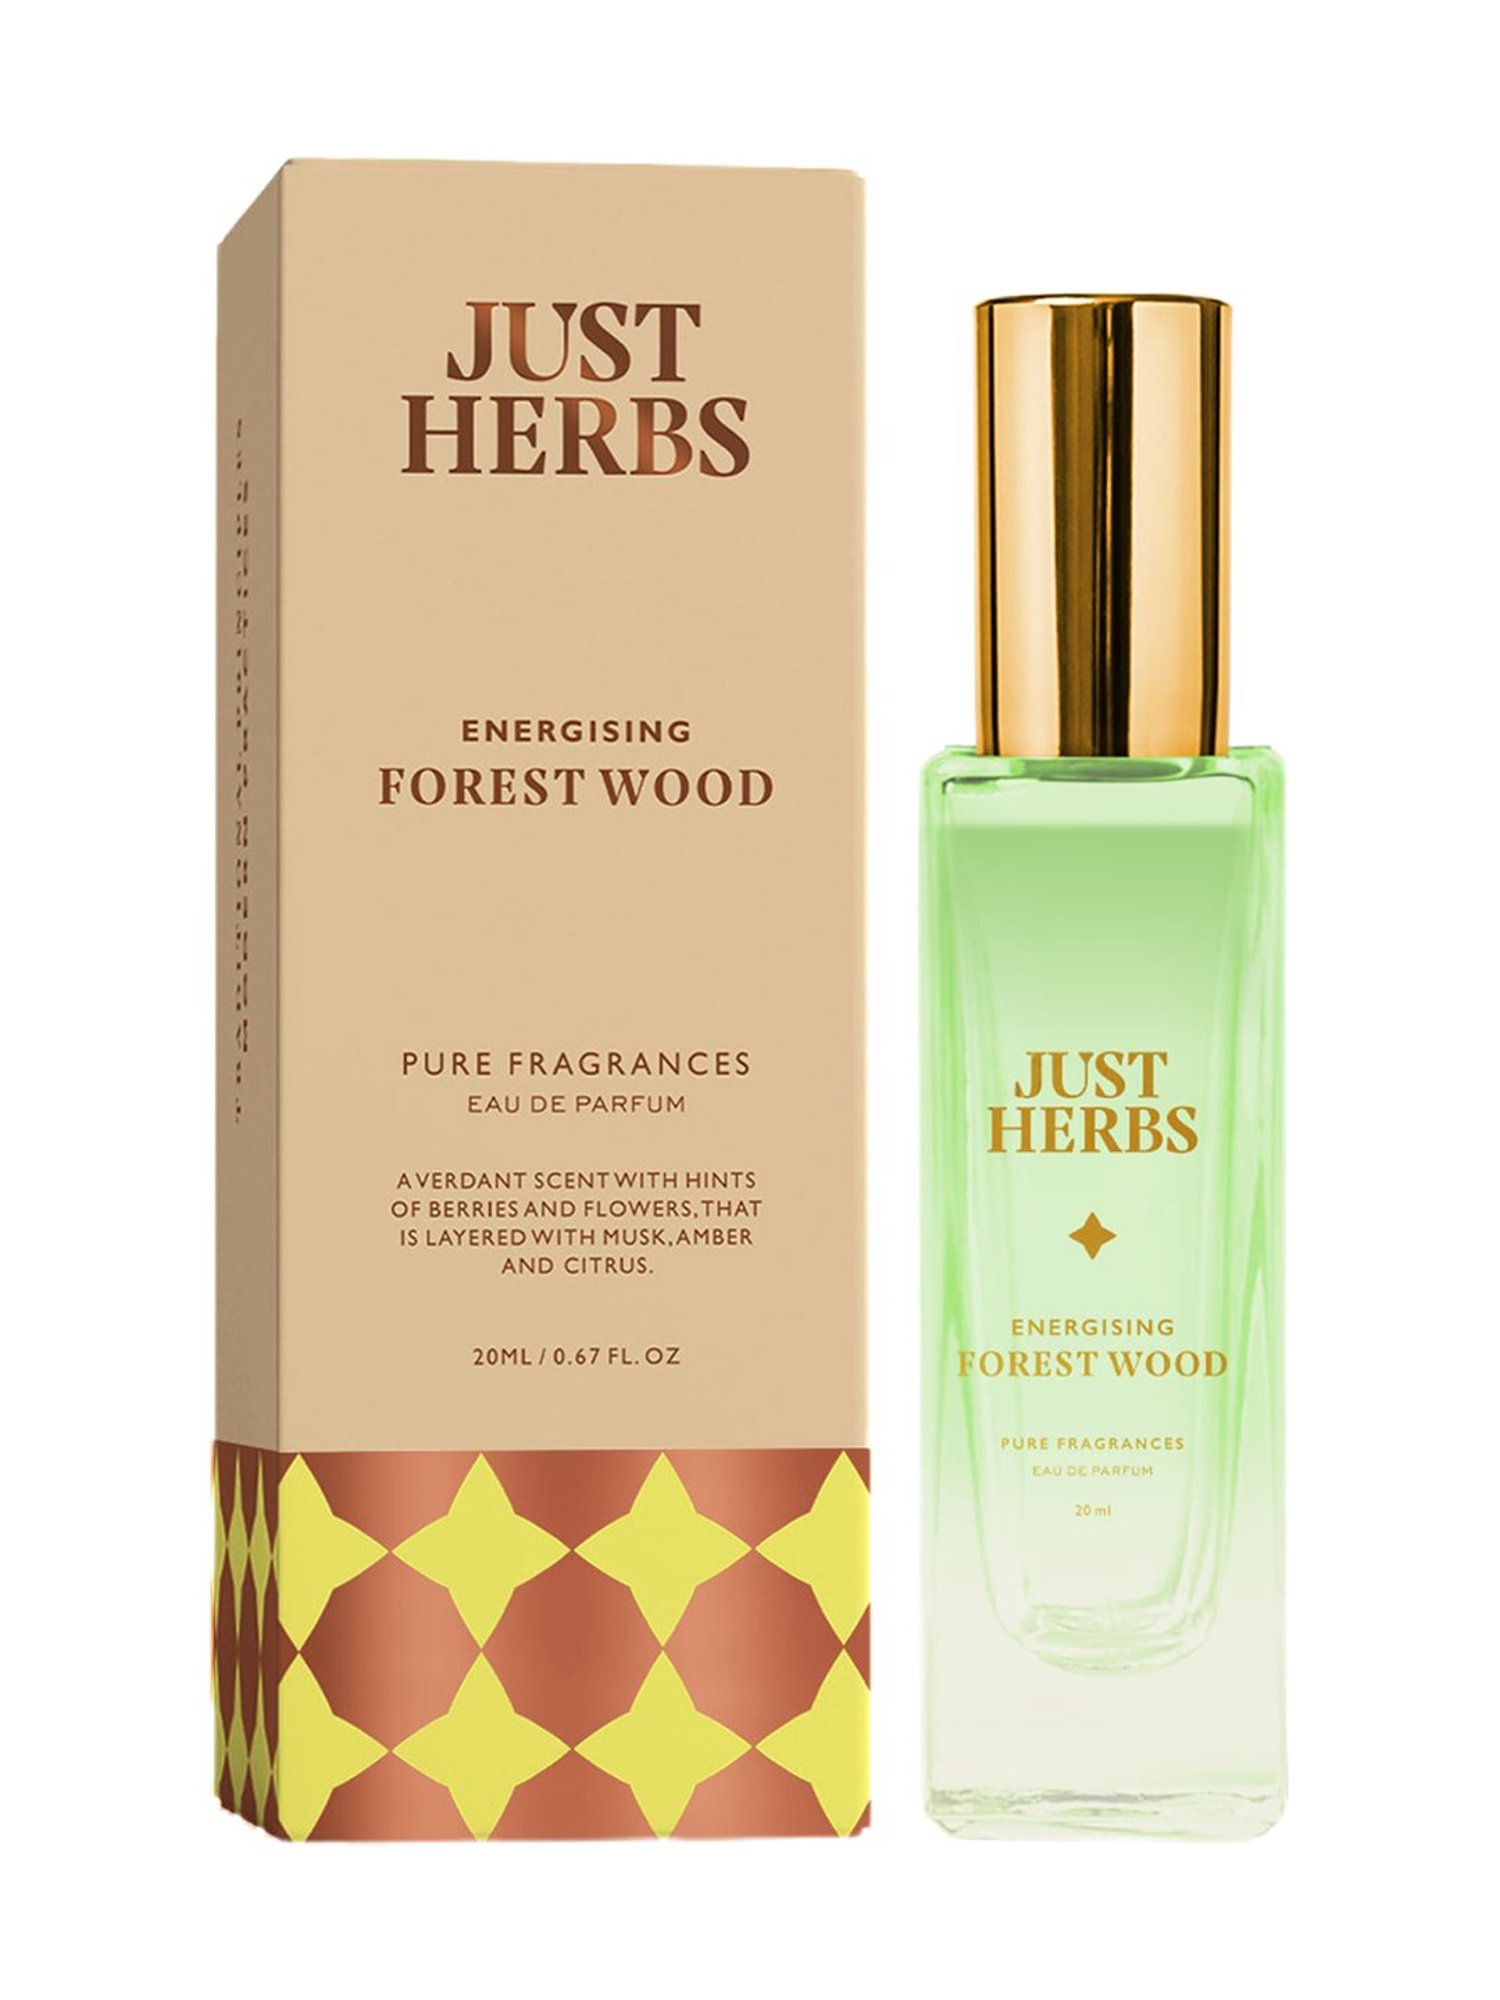 Buy JUST HERBS Energising Forest Wood Eau de Parfum - 20 ml at